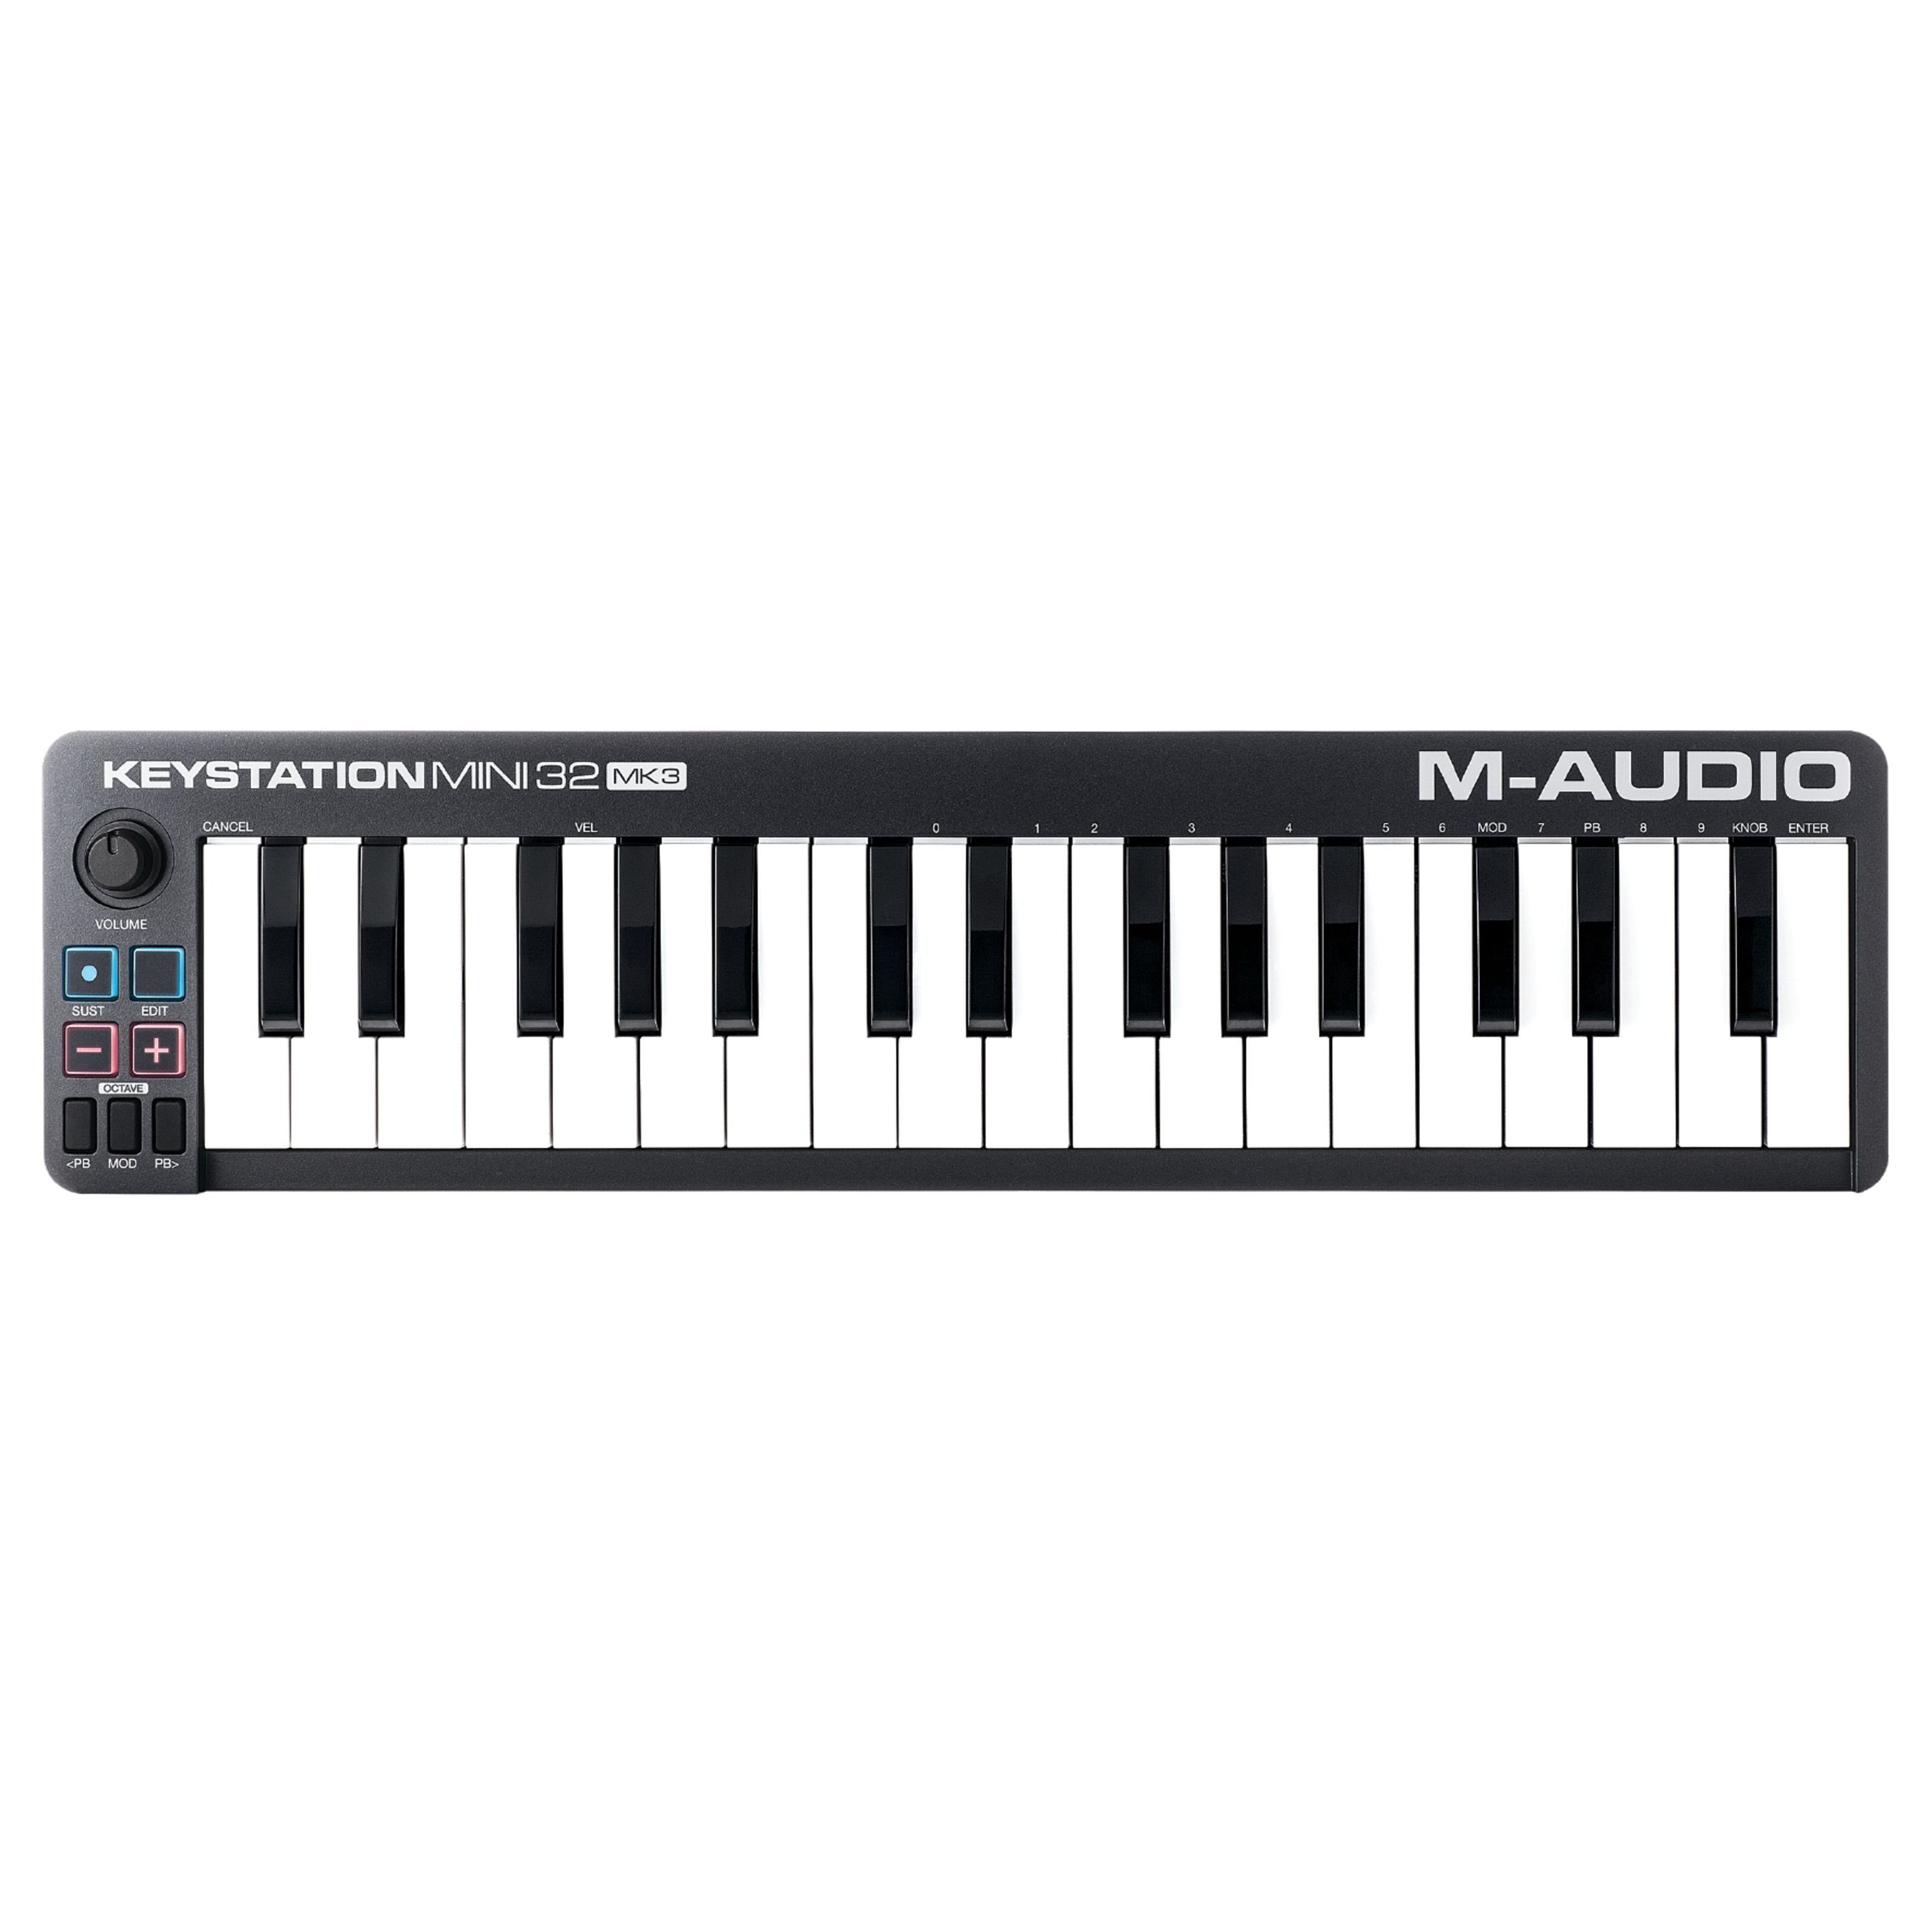 M-AUDIO Masterkeyboard (Keystation Mini 32 Mk3), Keystation Mini 32 Mk3 - Master Keyboard Mini